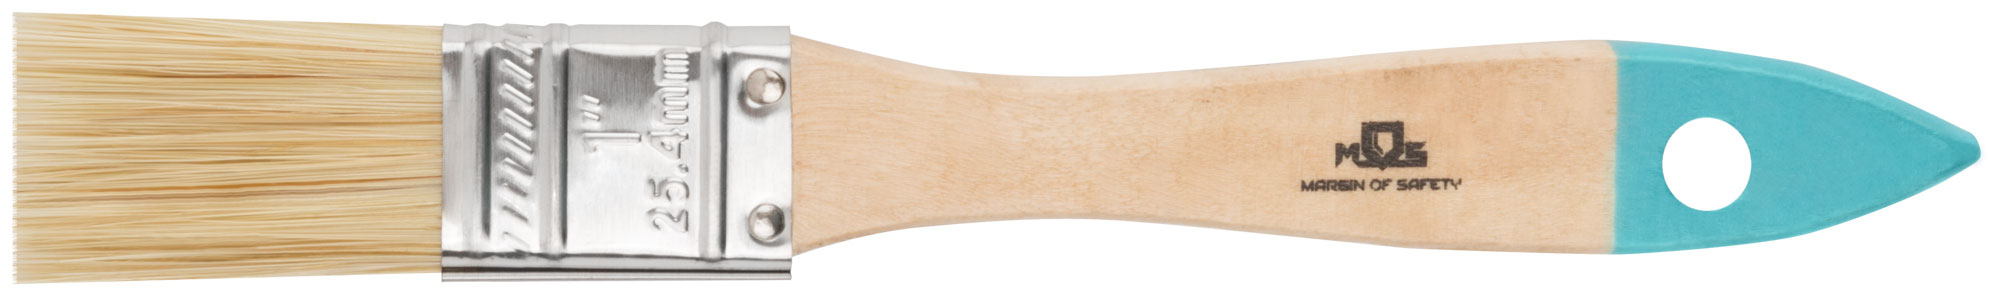 Кисть MOS флейцевая натуральная щетина, деревянная ручка 1 (25 мм) 00703М цена и фото